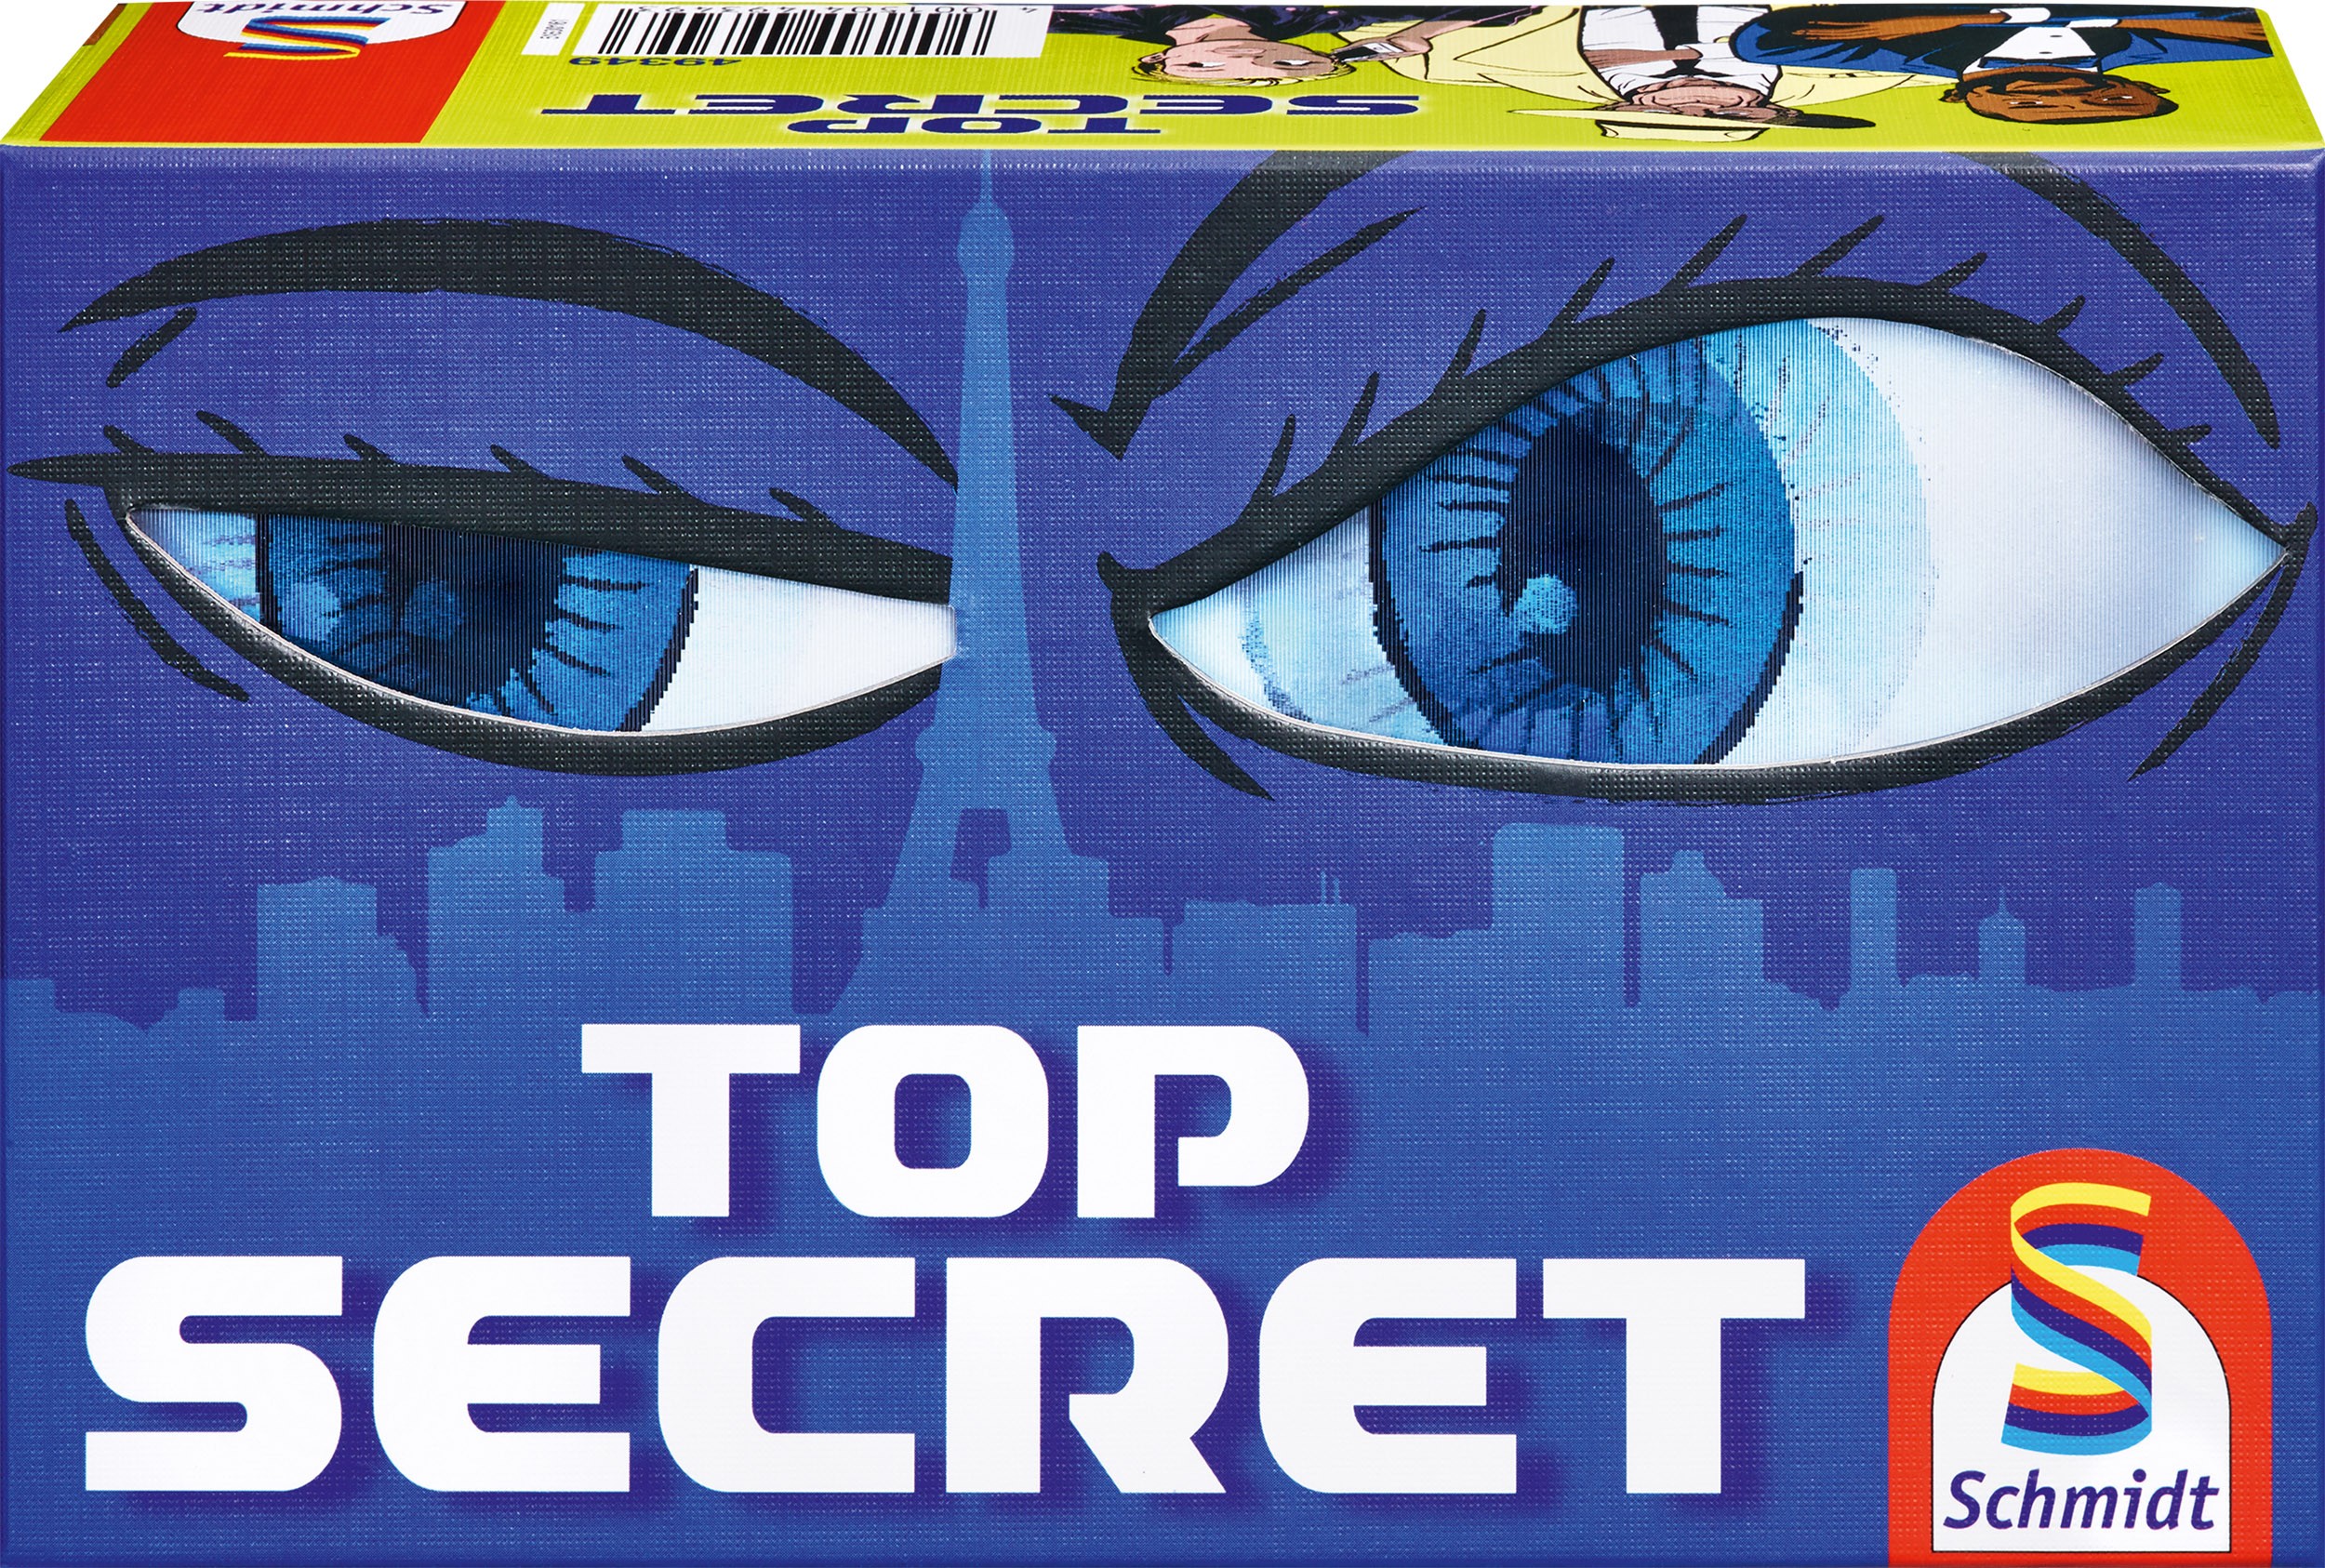 Top secret 0 (0)